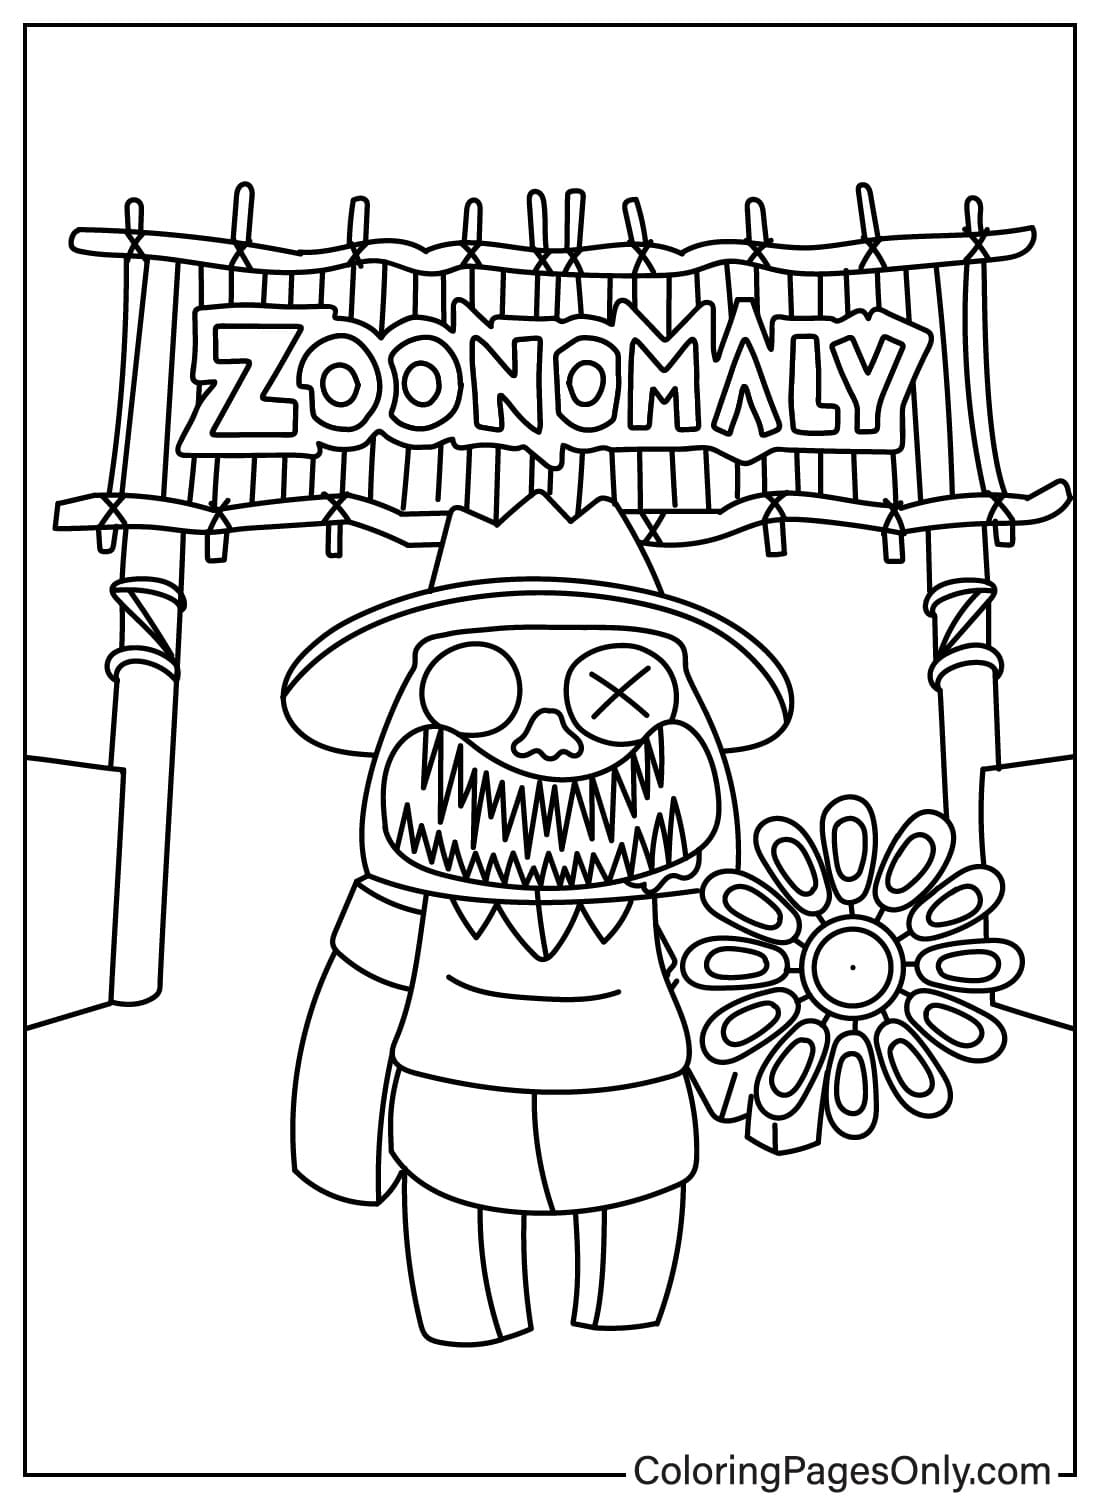 صفحات تلوين Zoonomaly للتنزيل من Zoonomaly